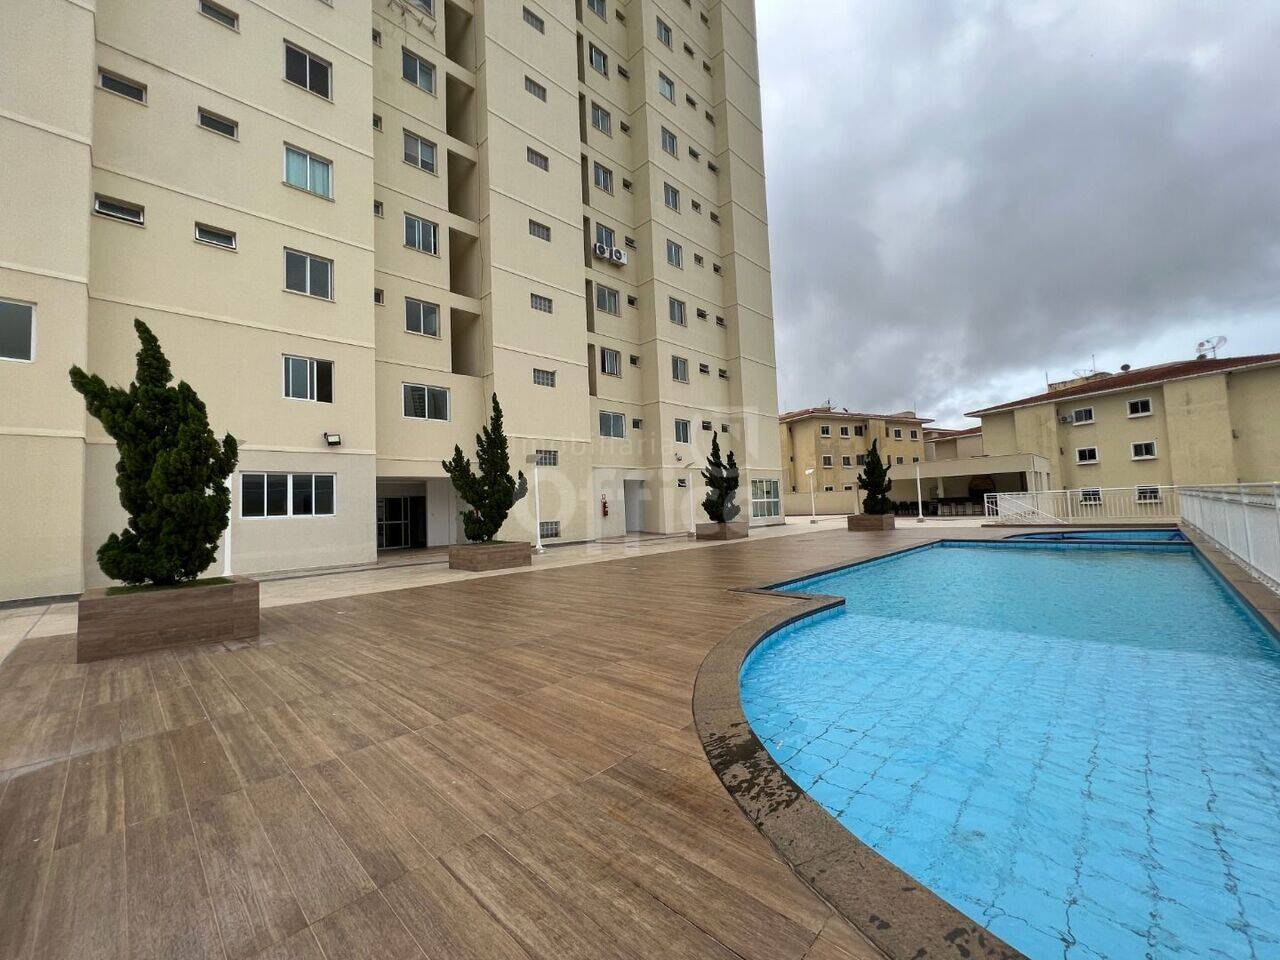 Apartamento duplex Maracanã, Anápolis - GO